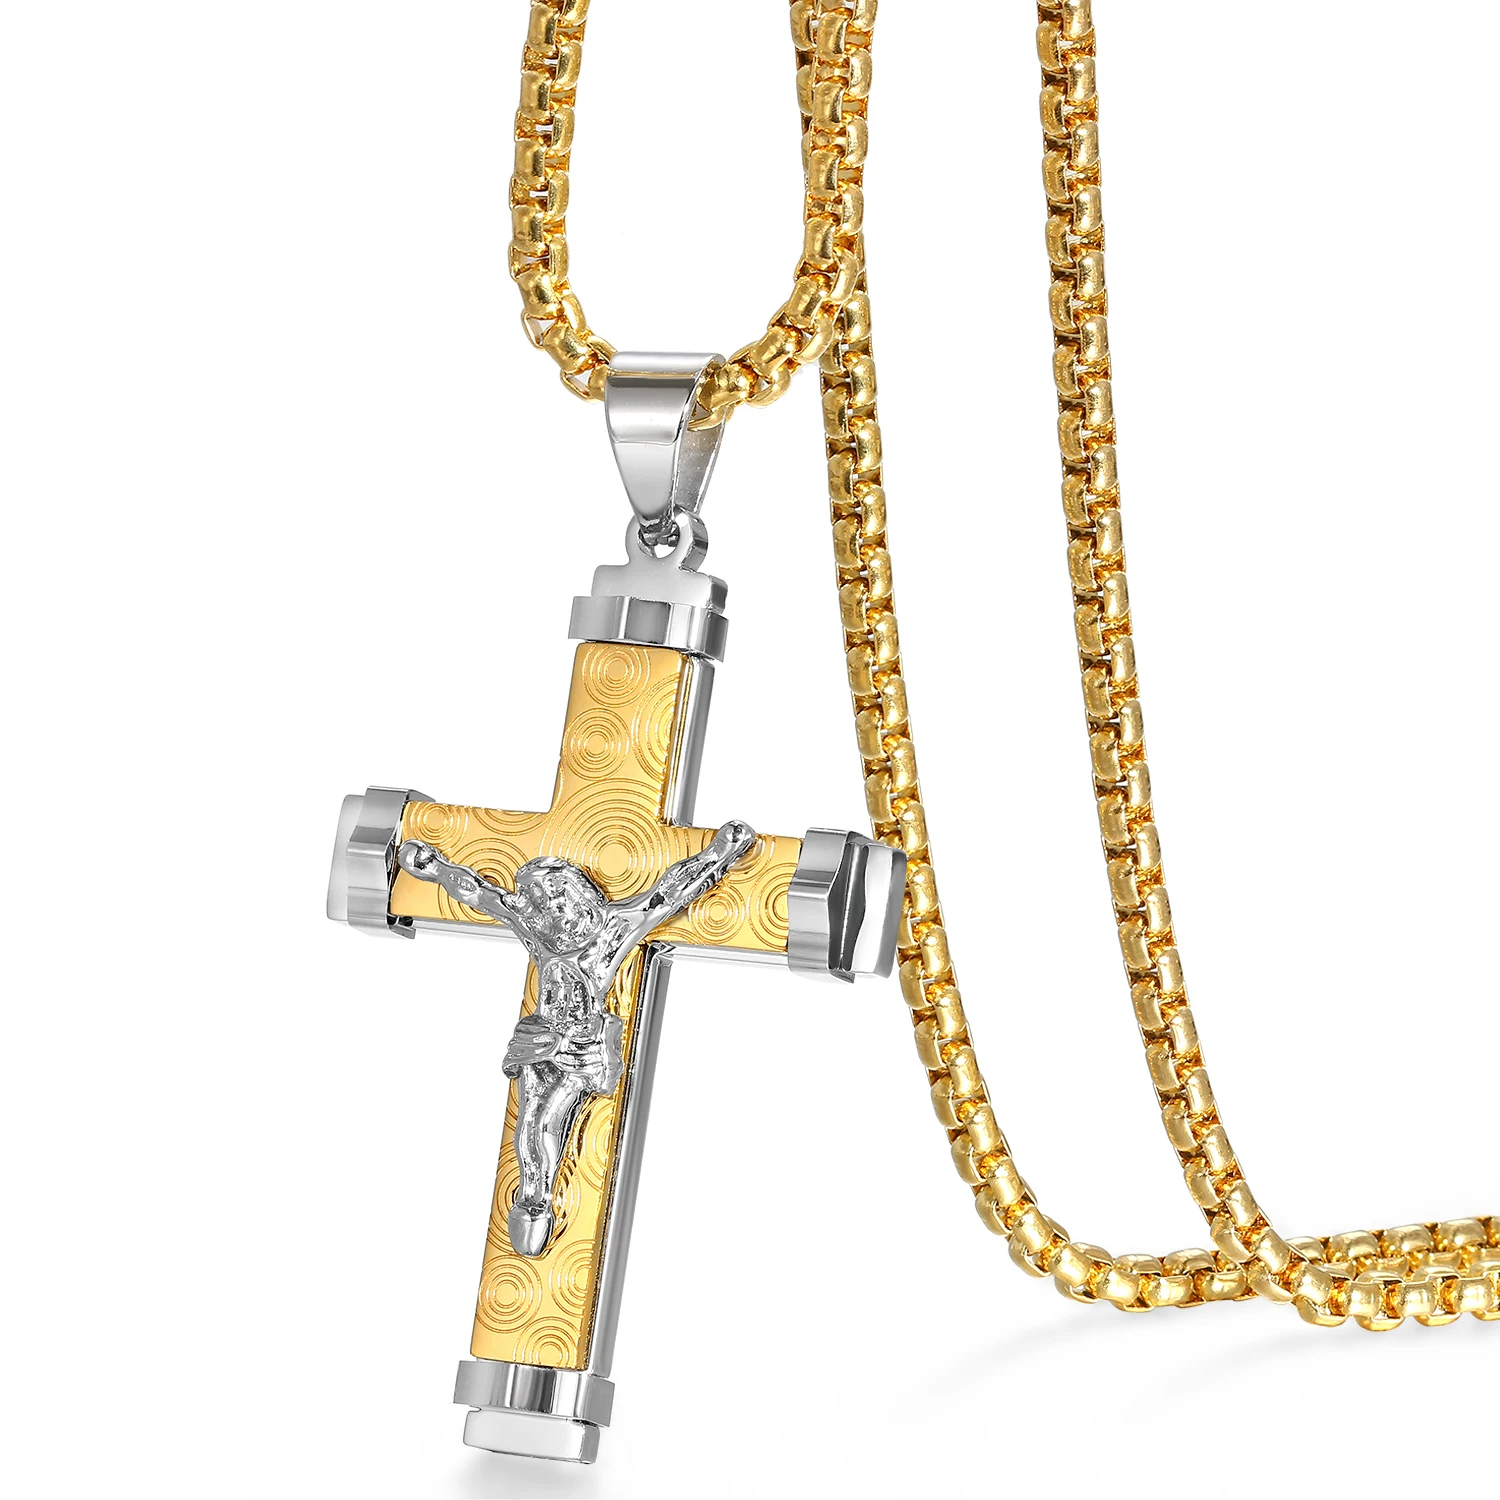 

Ожерелье мужское/женское BONISKISS с крестом Иисуса, из нержавеющей стали